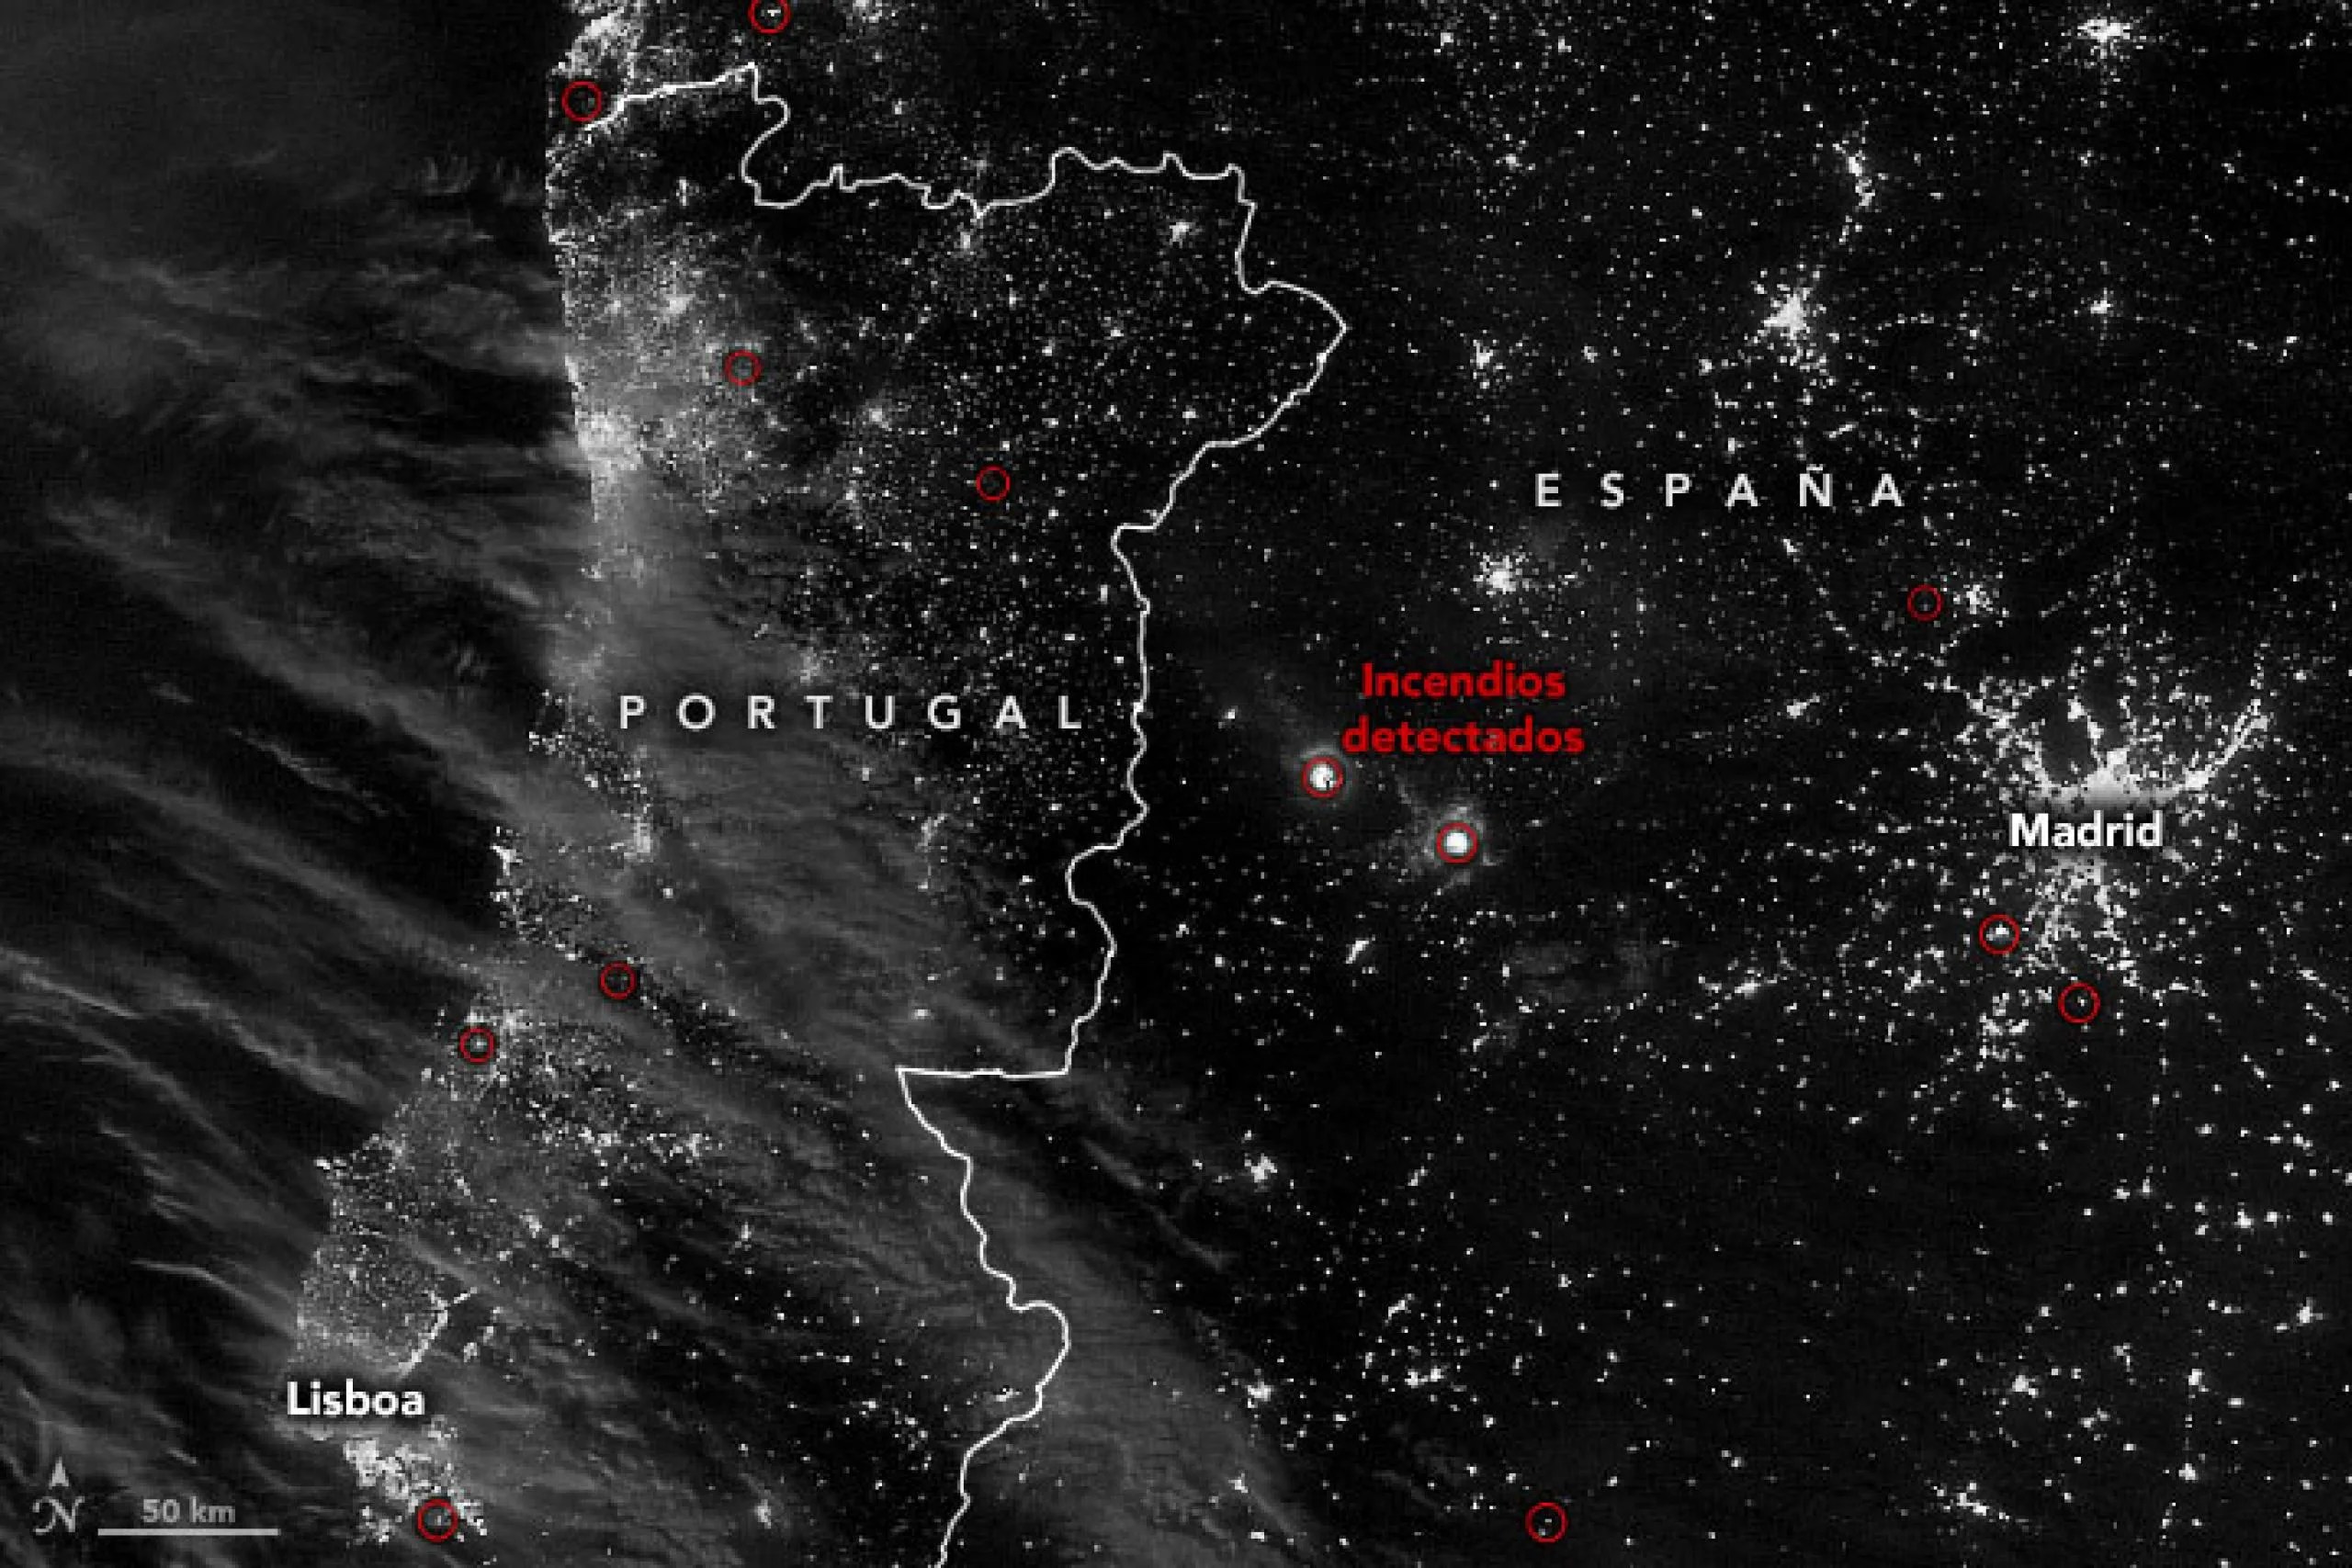 La imagen de arriba muestra la ubicación de incendios detectados en Portugal y España, según lo observado por el Conjunto de radiómetros de imágenes en el infrarrojo visible (VIIRS, por sus siglas en inglés) a bordo del satélite Suomi NPP el 12 de julio de 2022. Una de las detecciones de incendios más destacadas al oeste de Madrid está en la ciudad de Las Hurdes, donde se quemaron más de 1.500 hectáreas (3.700 acres).